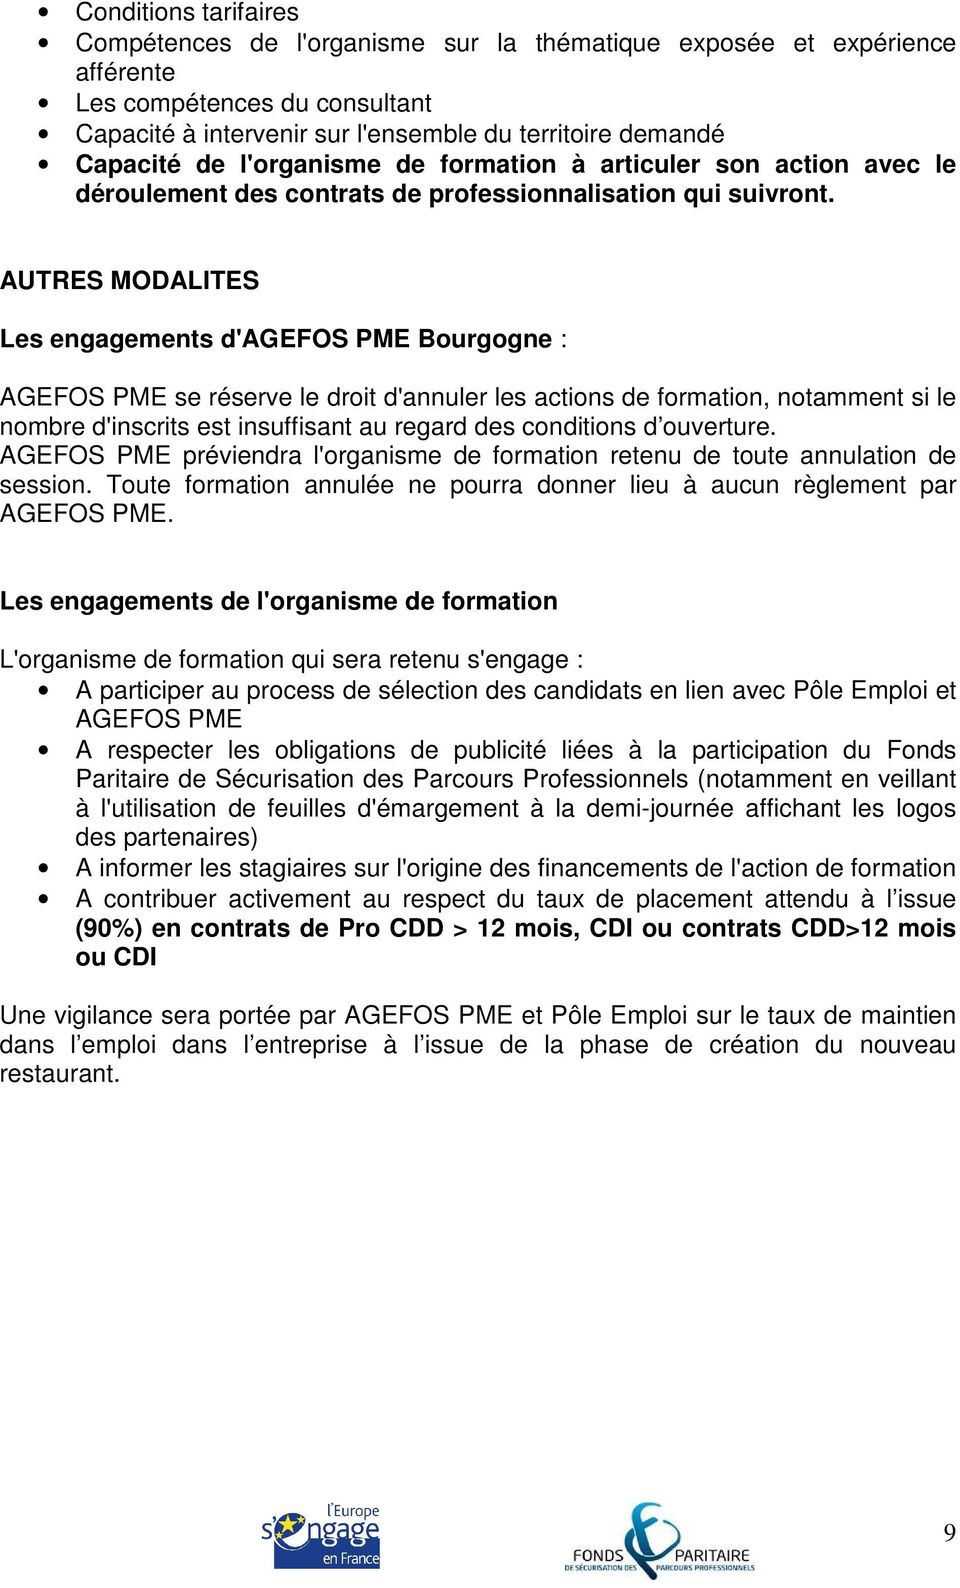 AUTRES MODALITES Les engagements d'agefos PME Bourgogne : AGEFOS PME se réserve le droit d'annuler les actions de formation, notamment si le nombre d'inscrits est insuffisant au regard des conditions